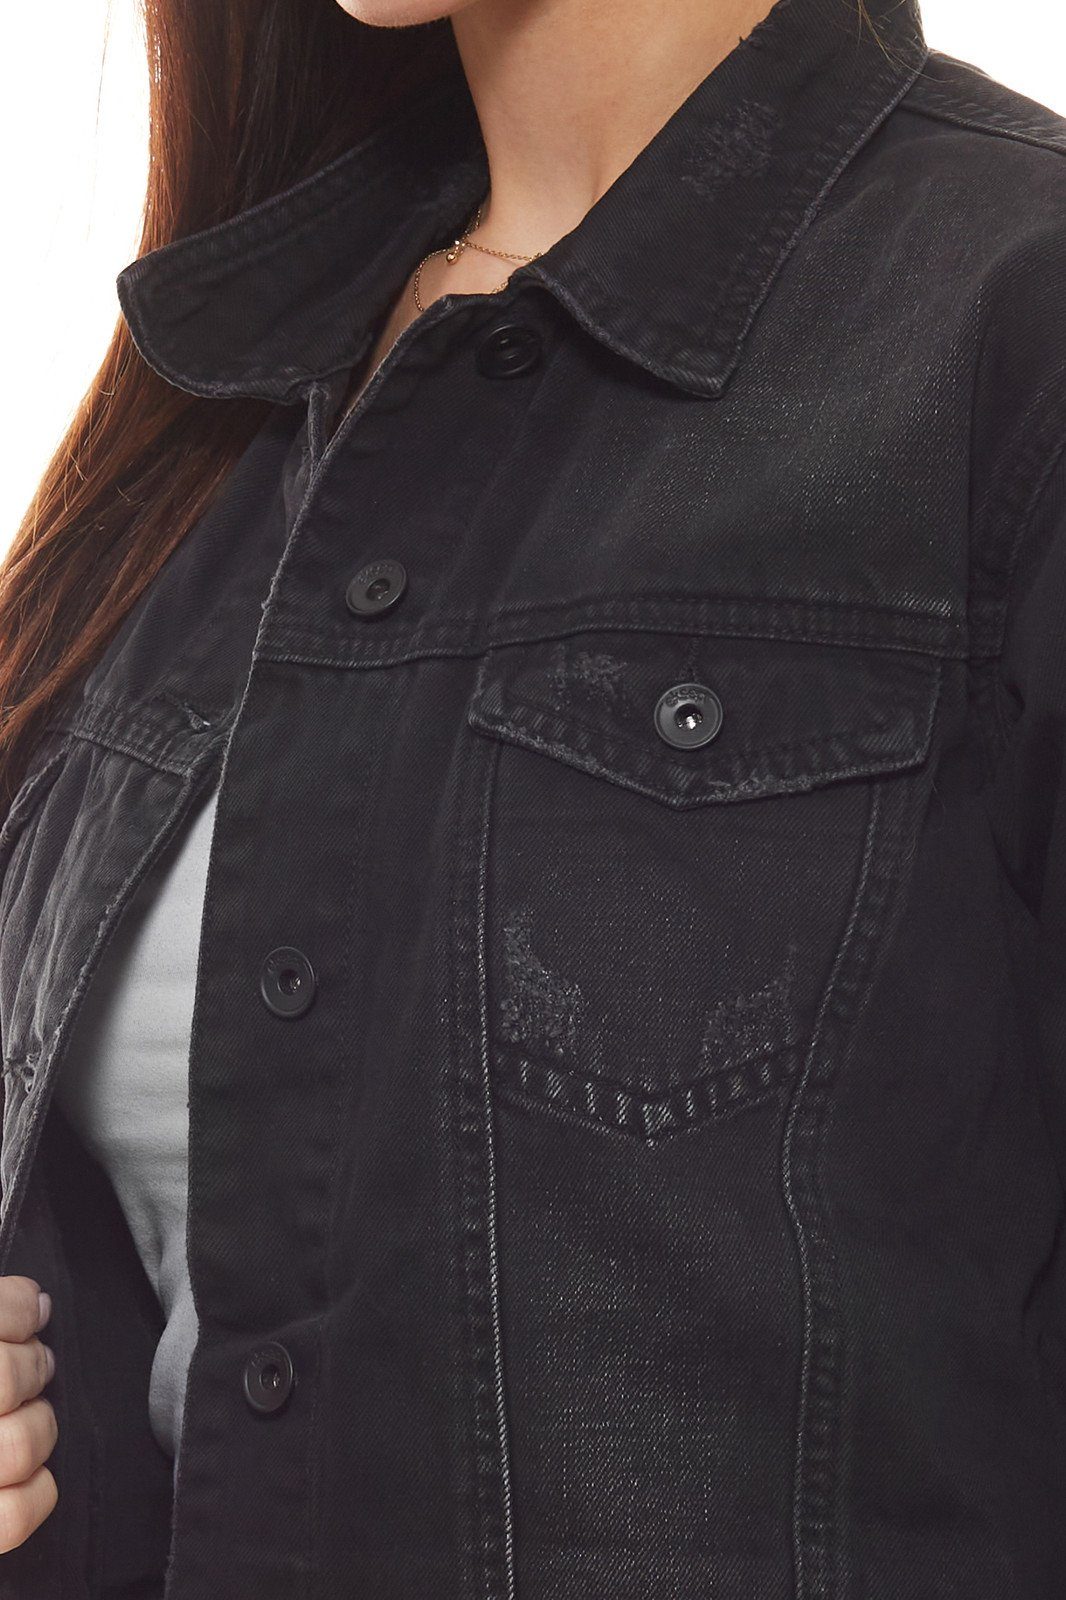 eksept Jeansjacke »eksept Beetle Denim-Jacke verwaschene Damen Jeans-Jacke  mit Knopfleiste Herbst-Jacke Grau« online kaufen | OTTO